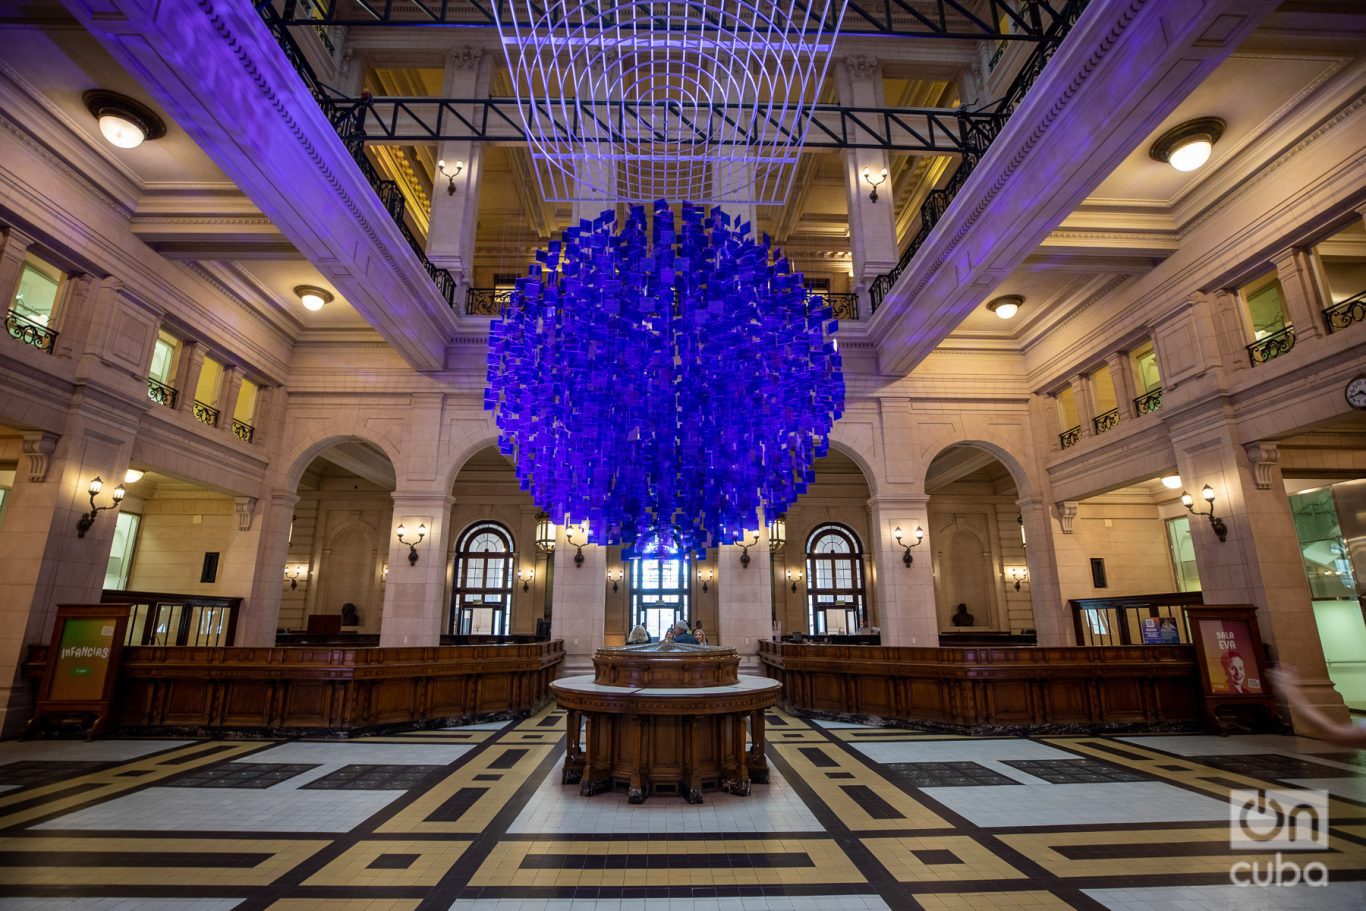  "La esfera azul", instalación de Julio Le Parc instalada en el Centro Cultural Kirchner. Foto: Kaloian.
